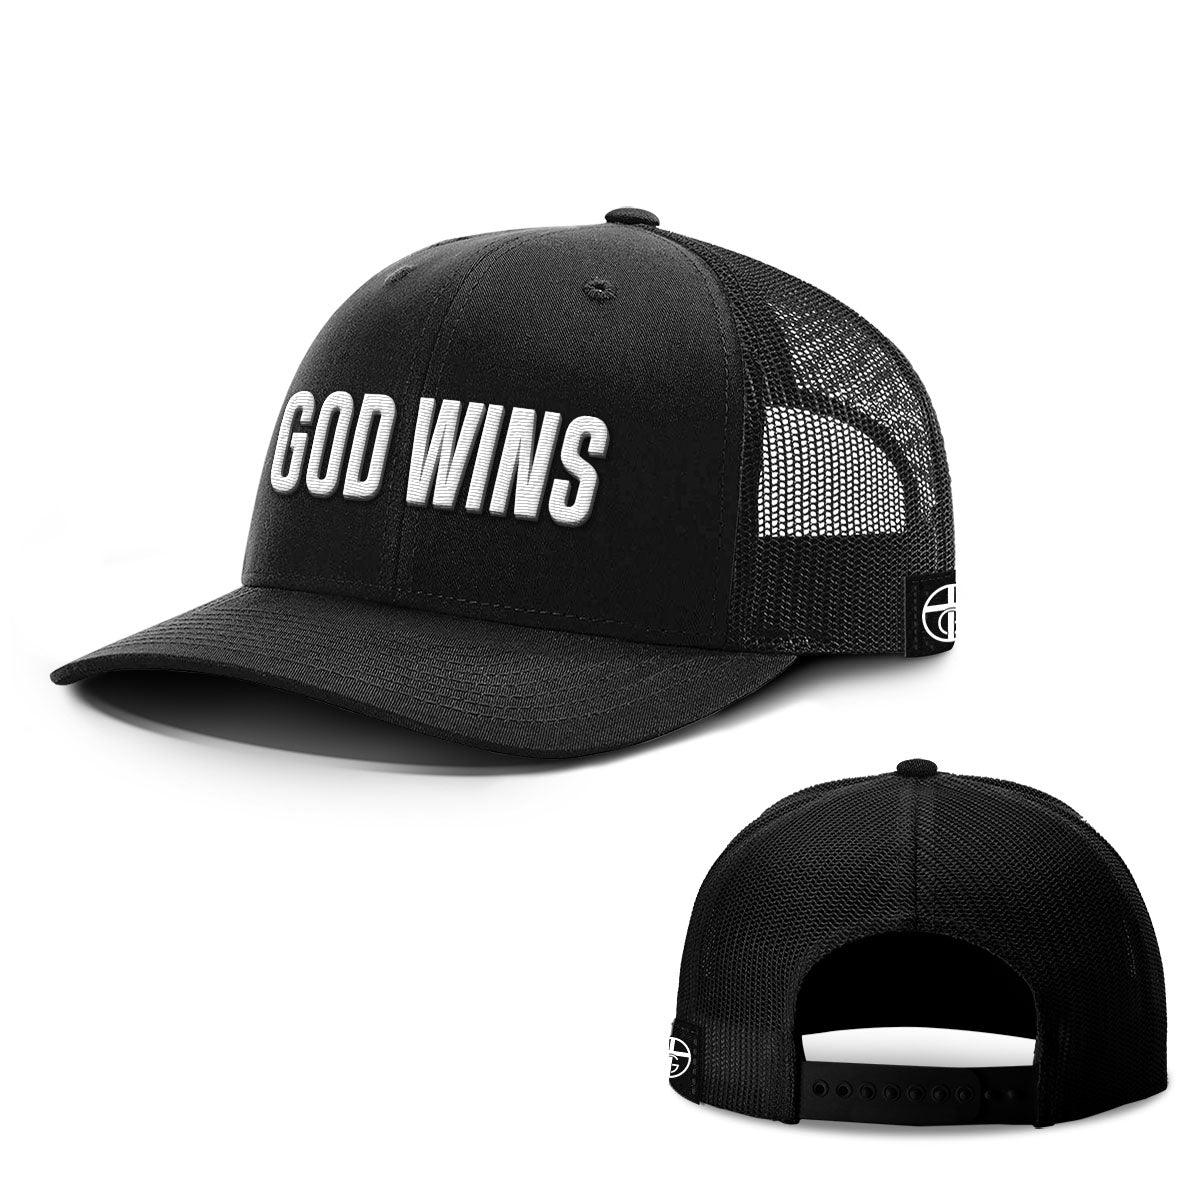 God Wins Hats